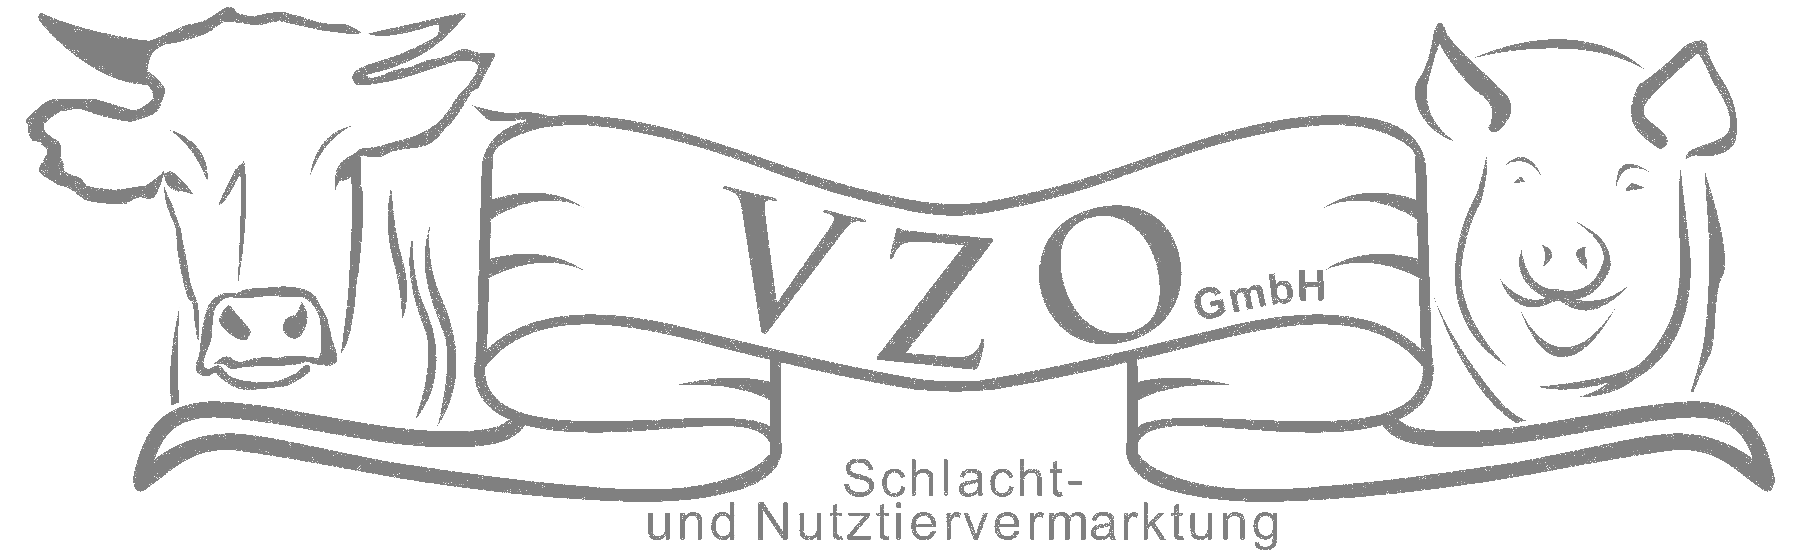 Logo VZO